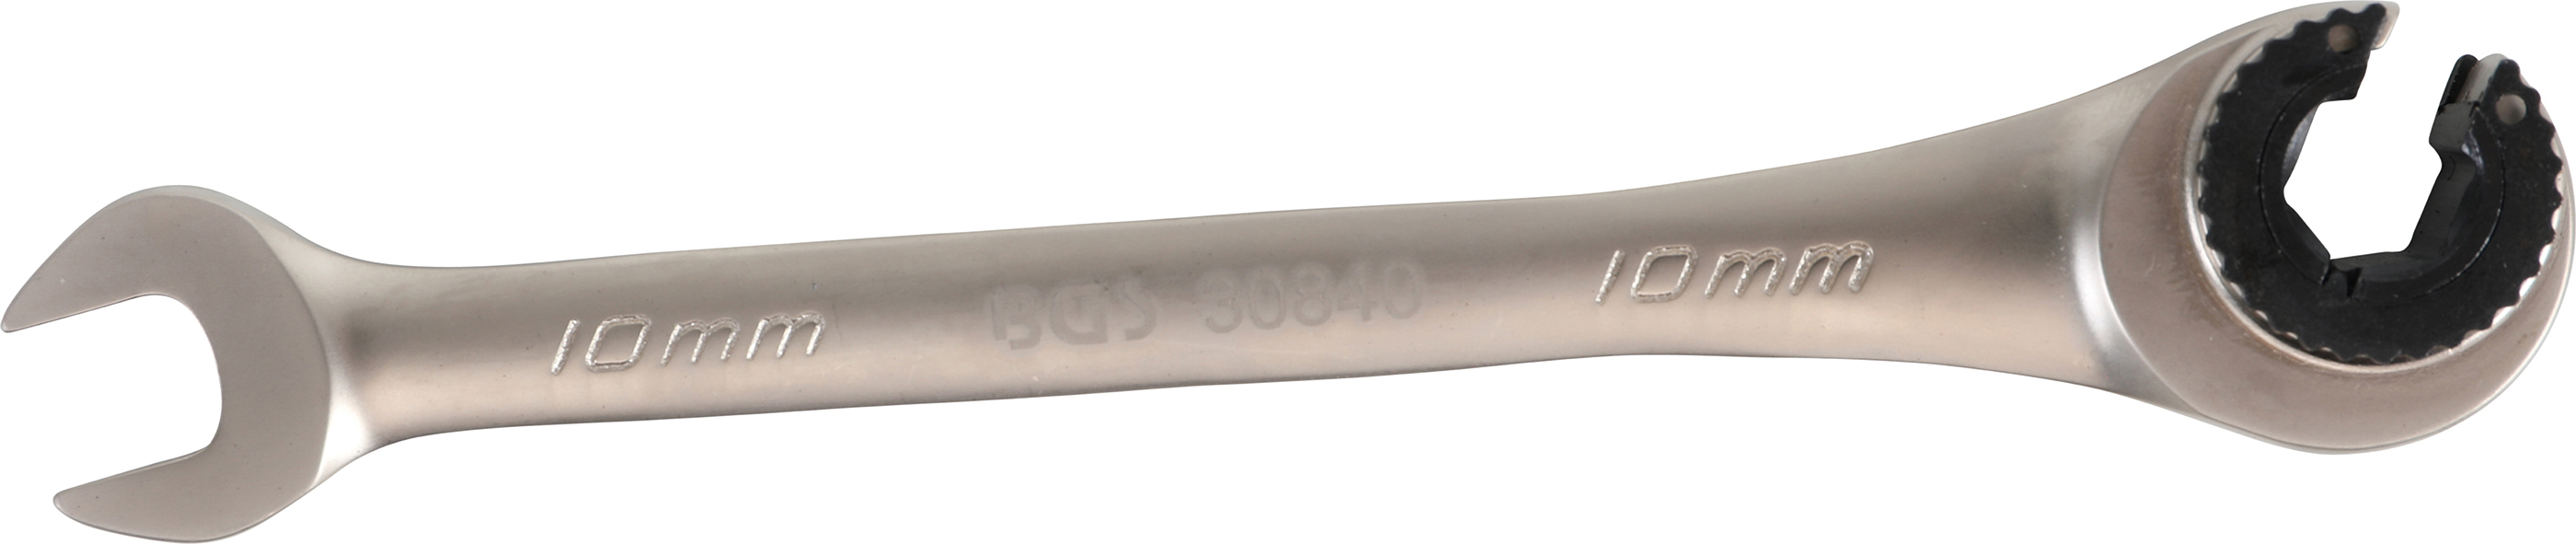 BGS 30840  Cheie inelara cu clichet 10 mm pentru conducte